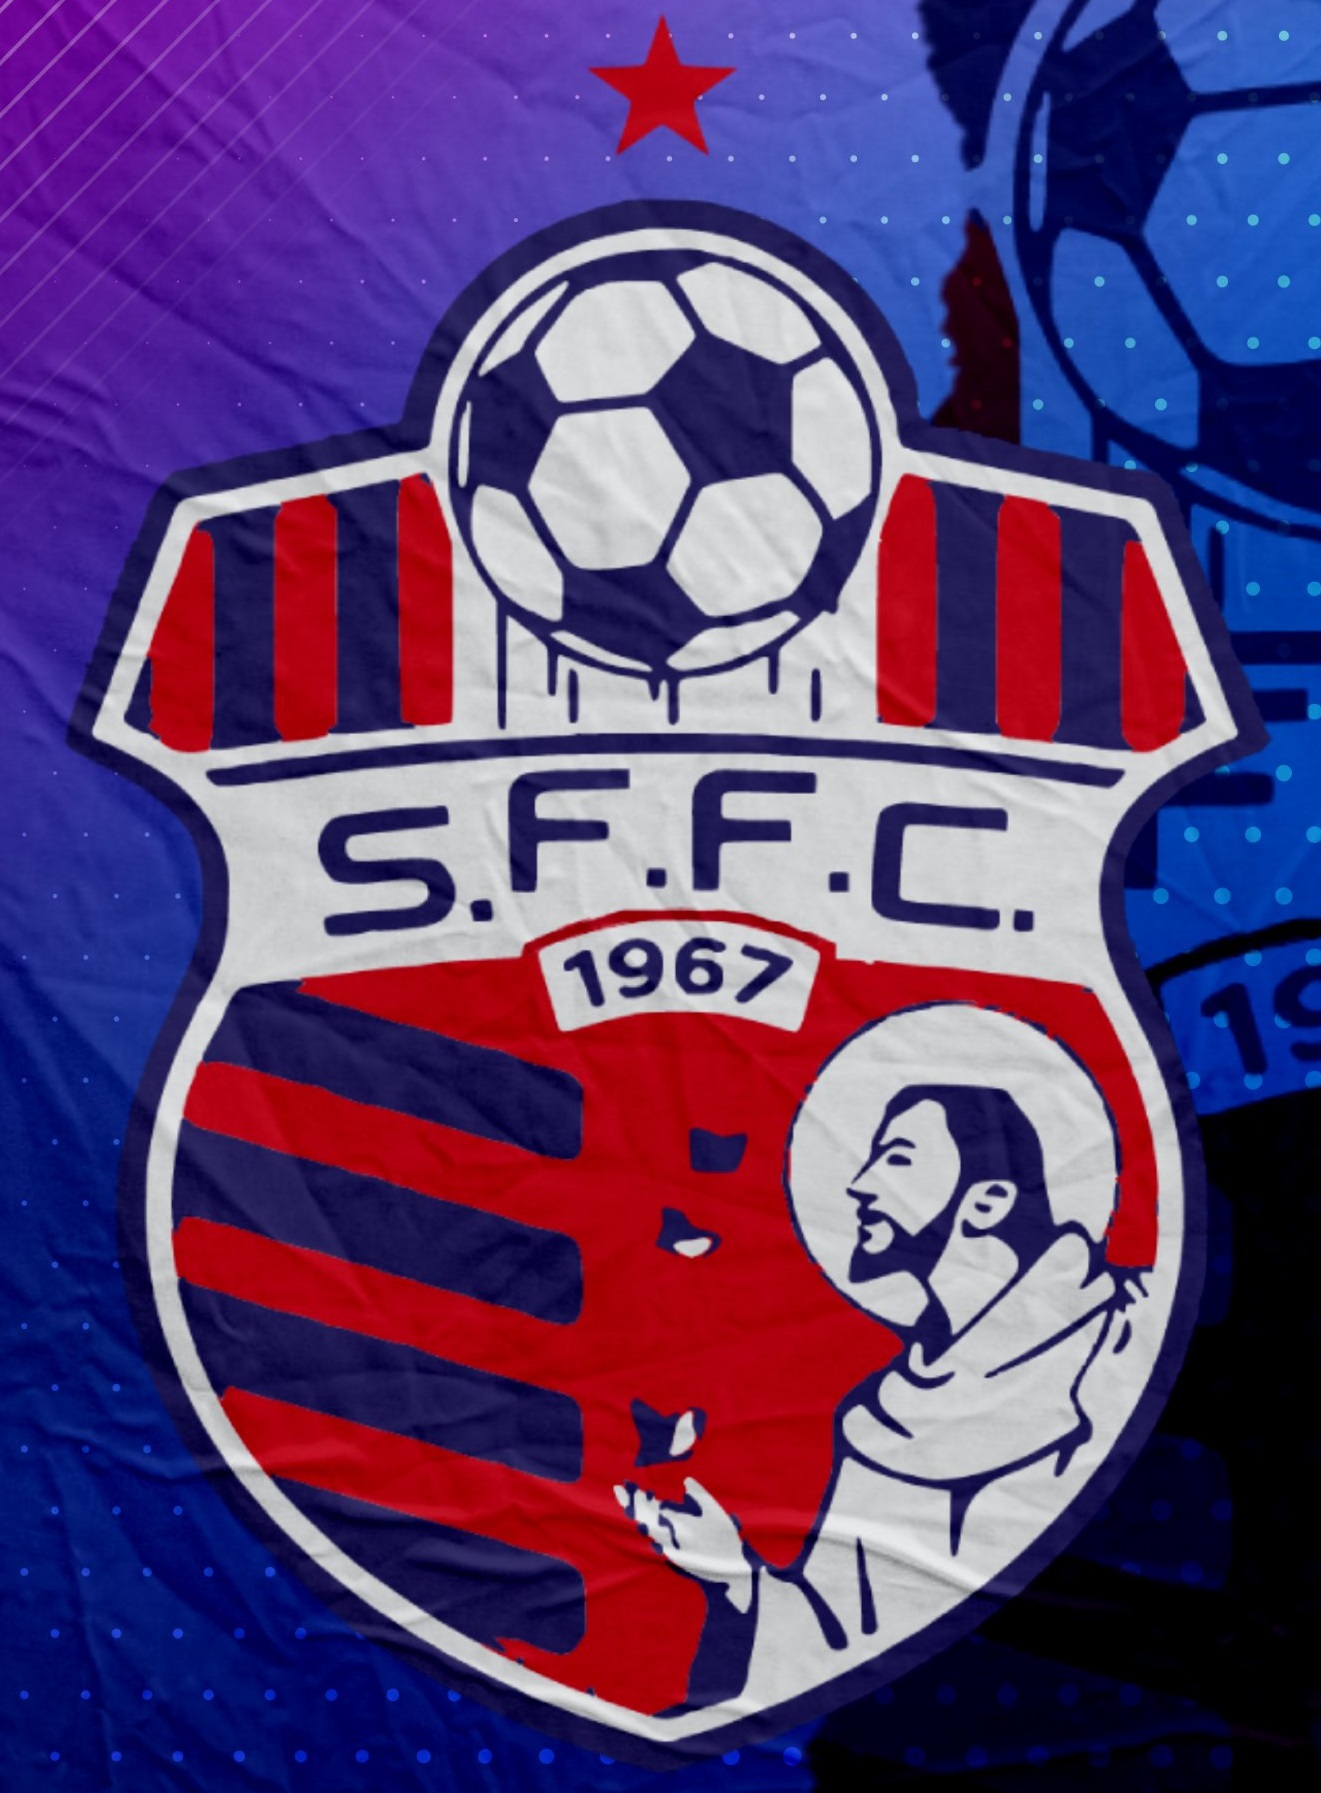 São Francisco Futebol Clube (Acre) – Wikipédia, a enciclopédia livre